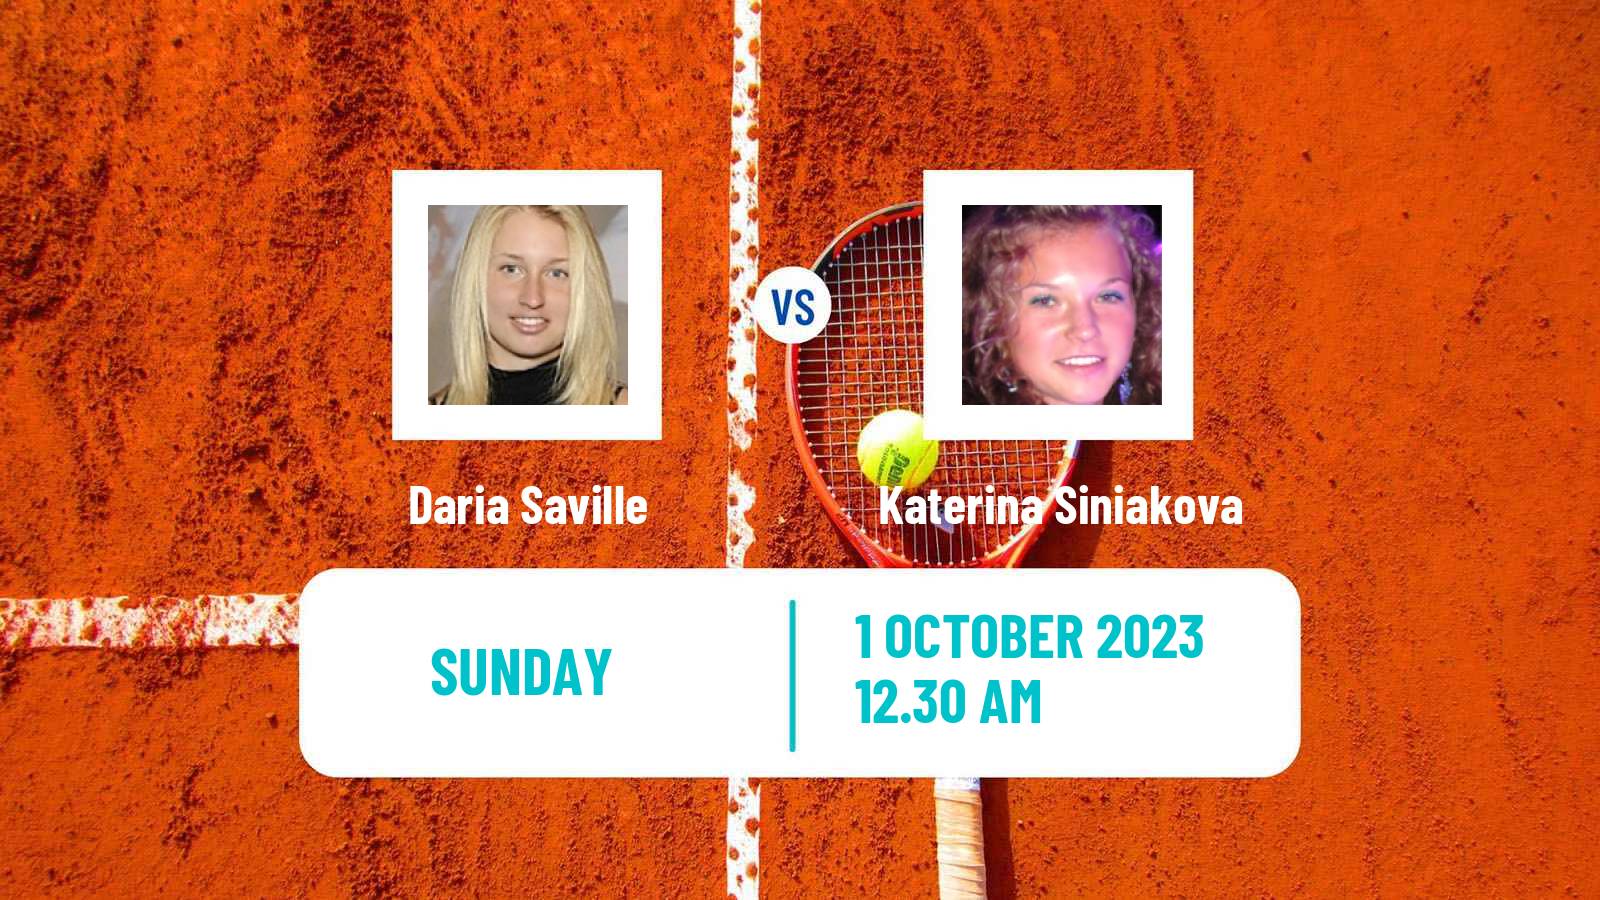 Tennis WTA Beijing Daria Saville - Katerina Siniakova